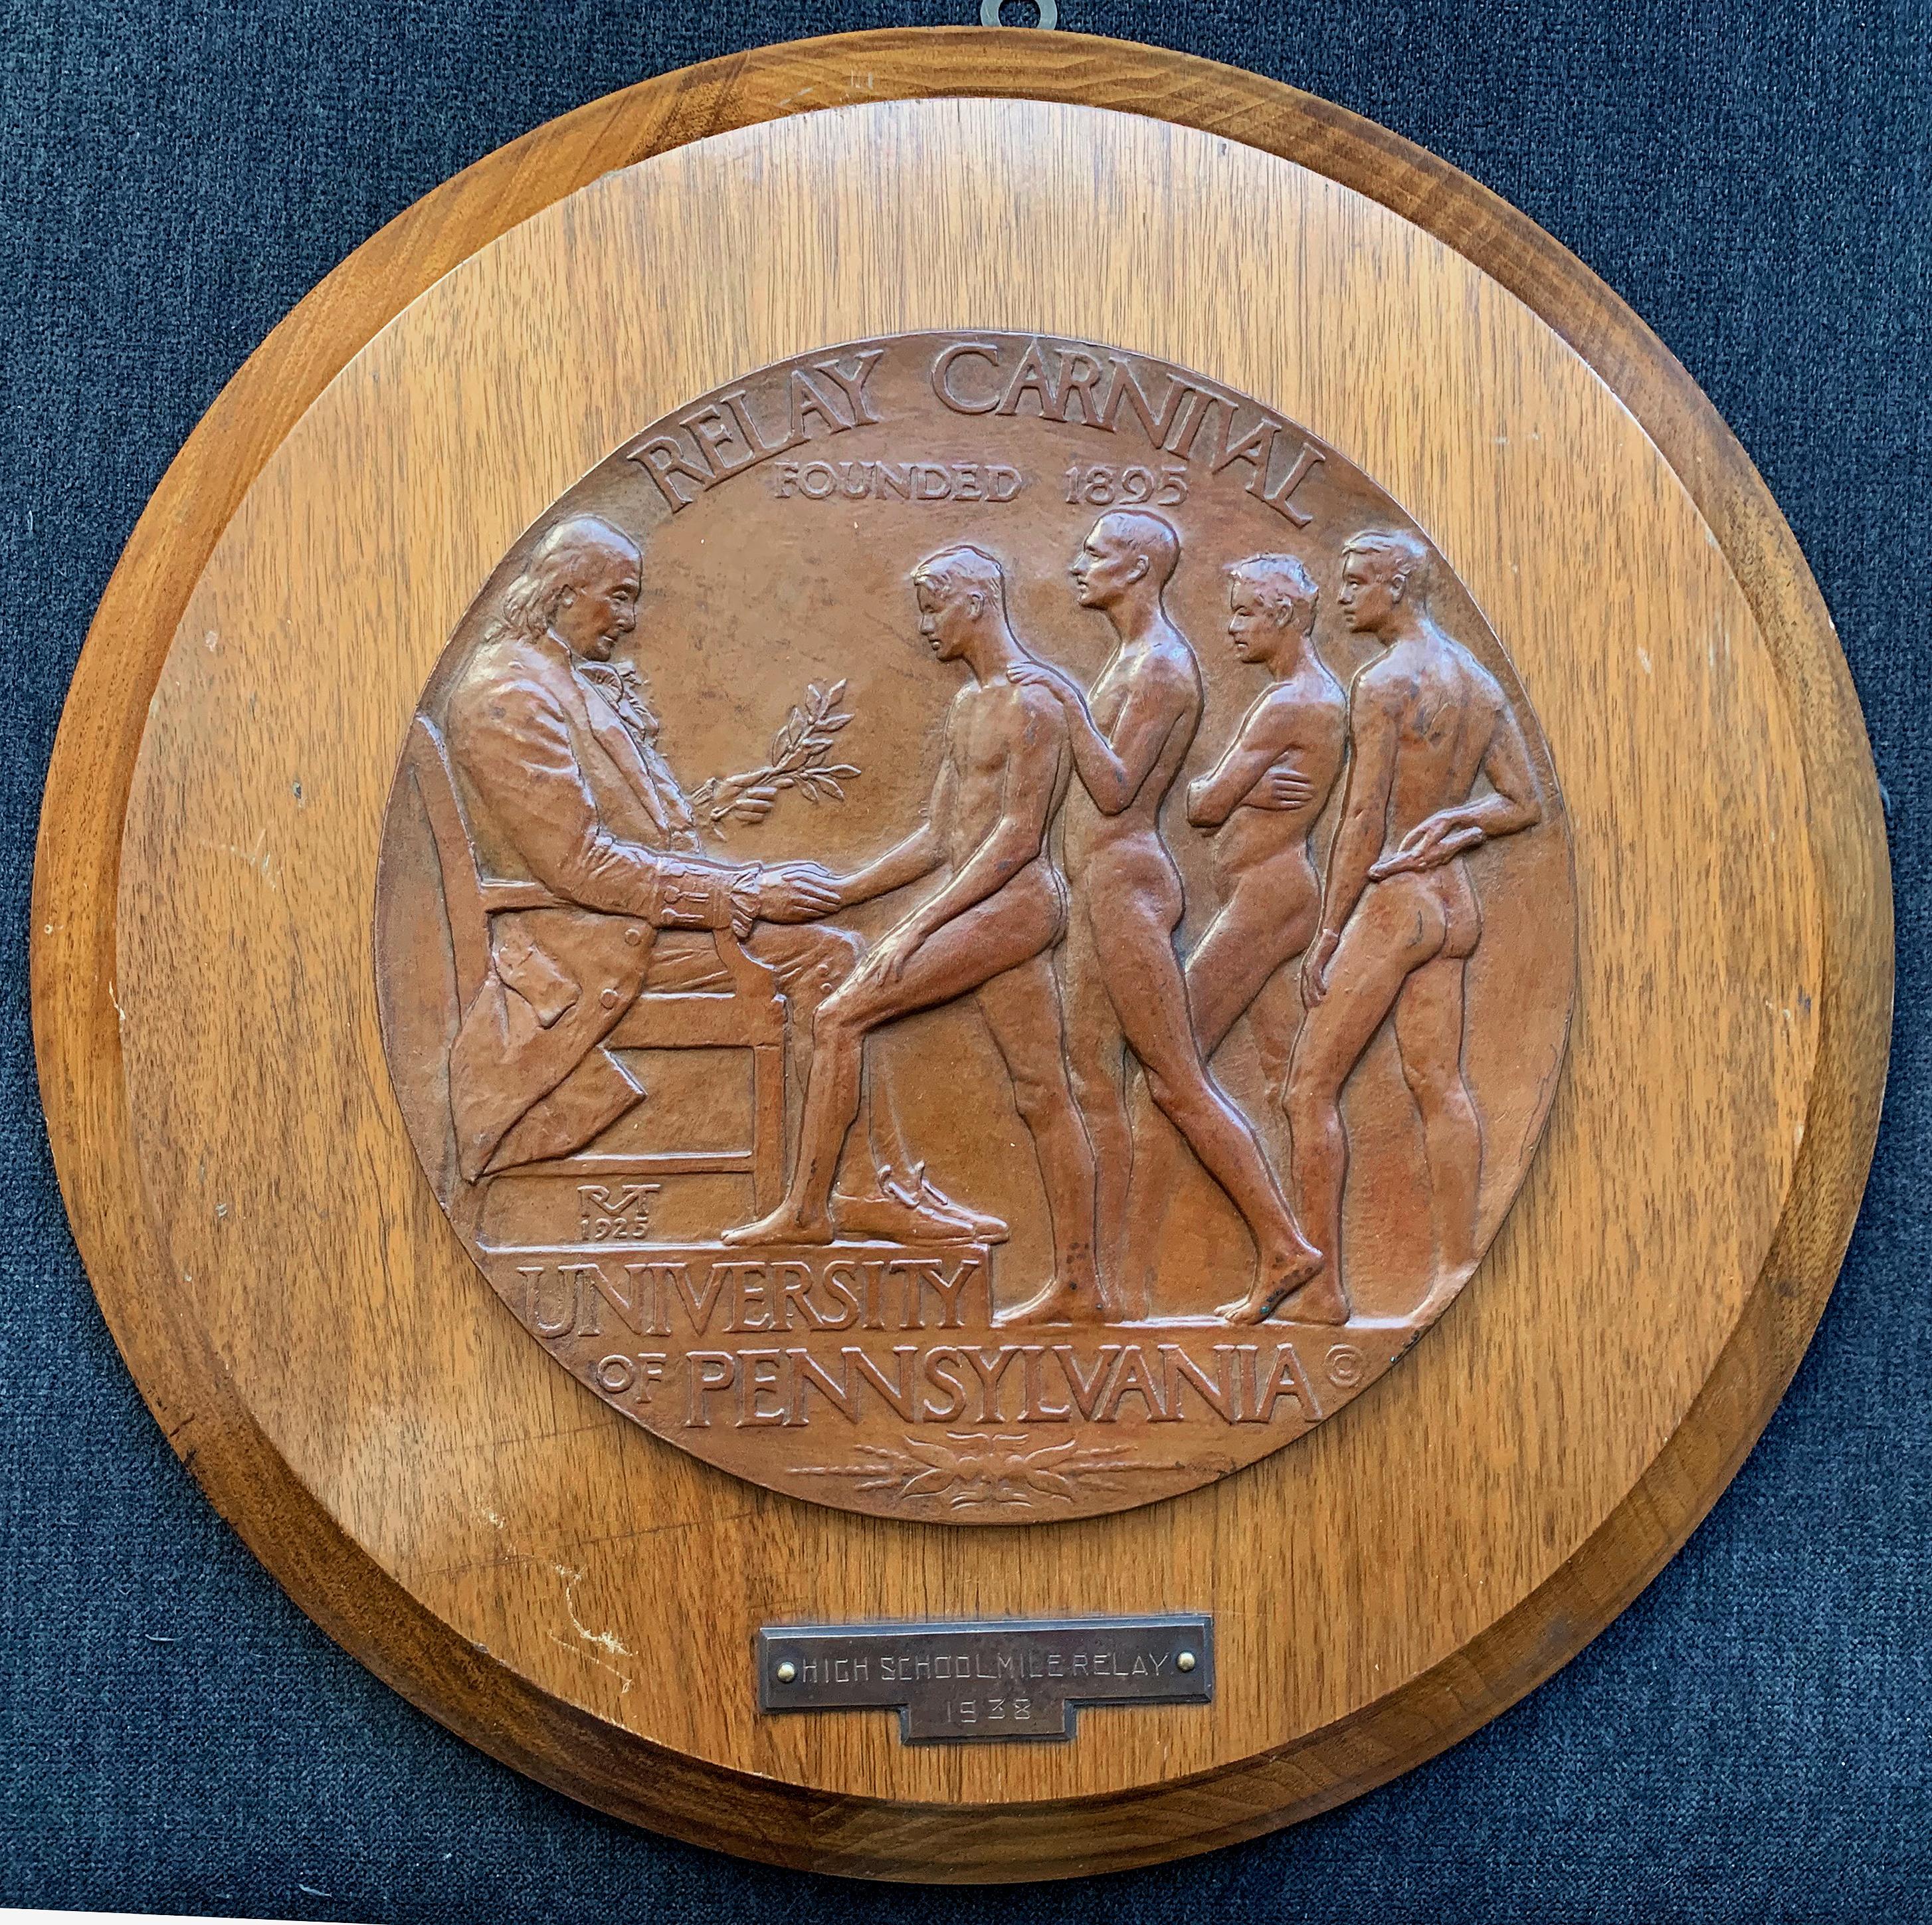 Grande et rare, cette plaque de bronze en bas-relief a été créée par le plus grand sculpteur de jeunes athlètes au monde pour le carnaval de relais de l'université de Pennsylvanie, aujourd'hui connu sous le nom de Penn Relays, une prestigieuse